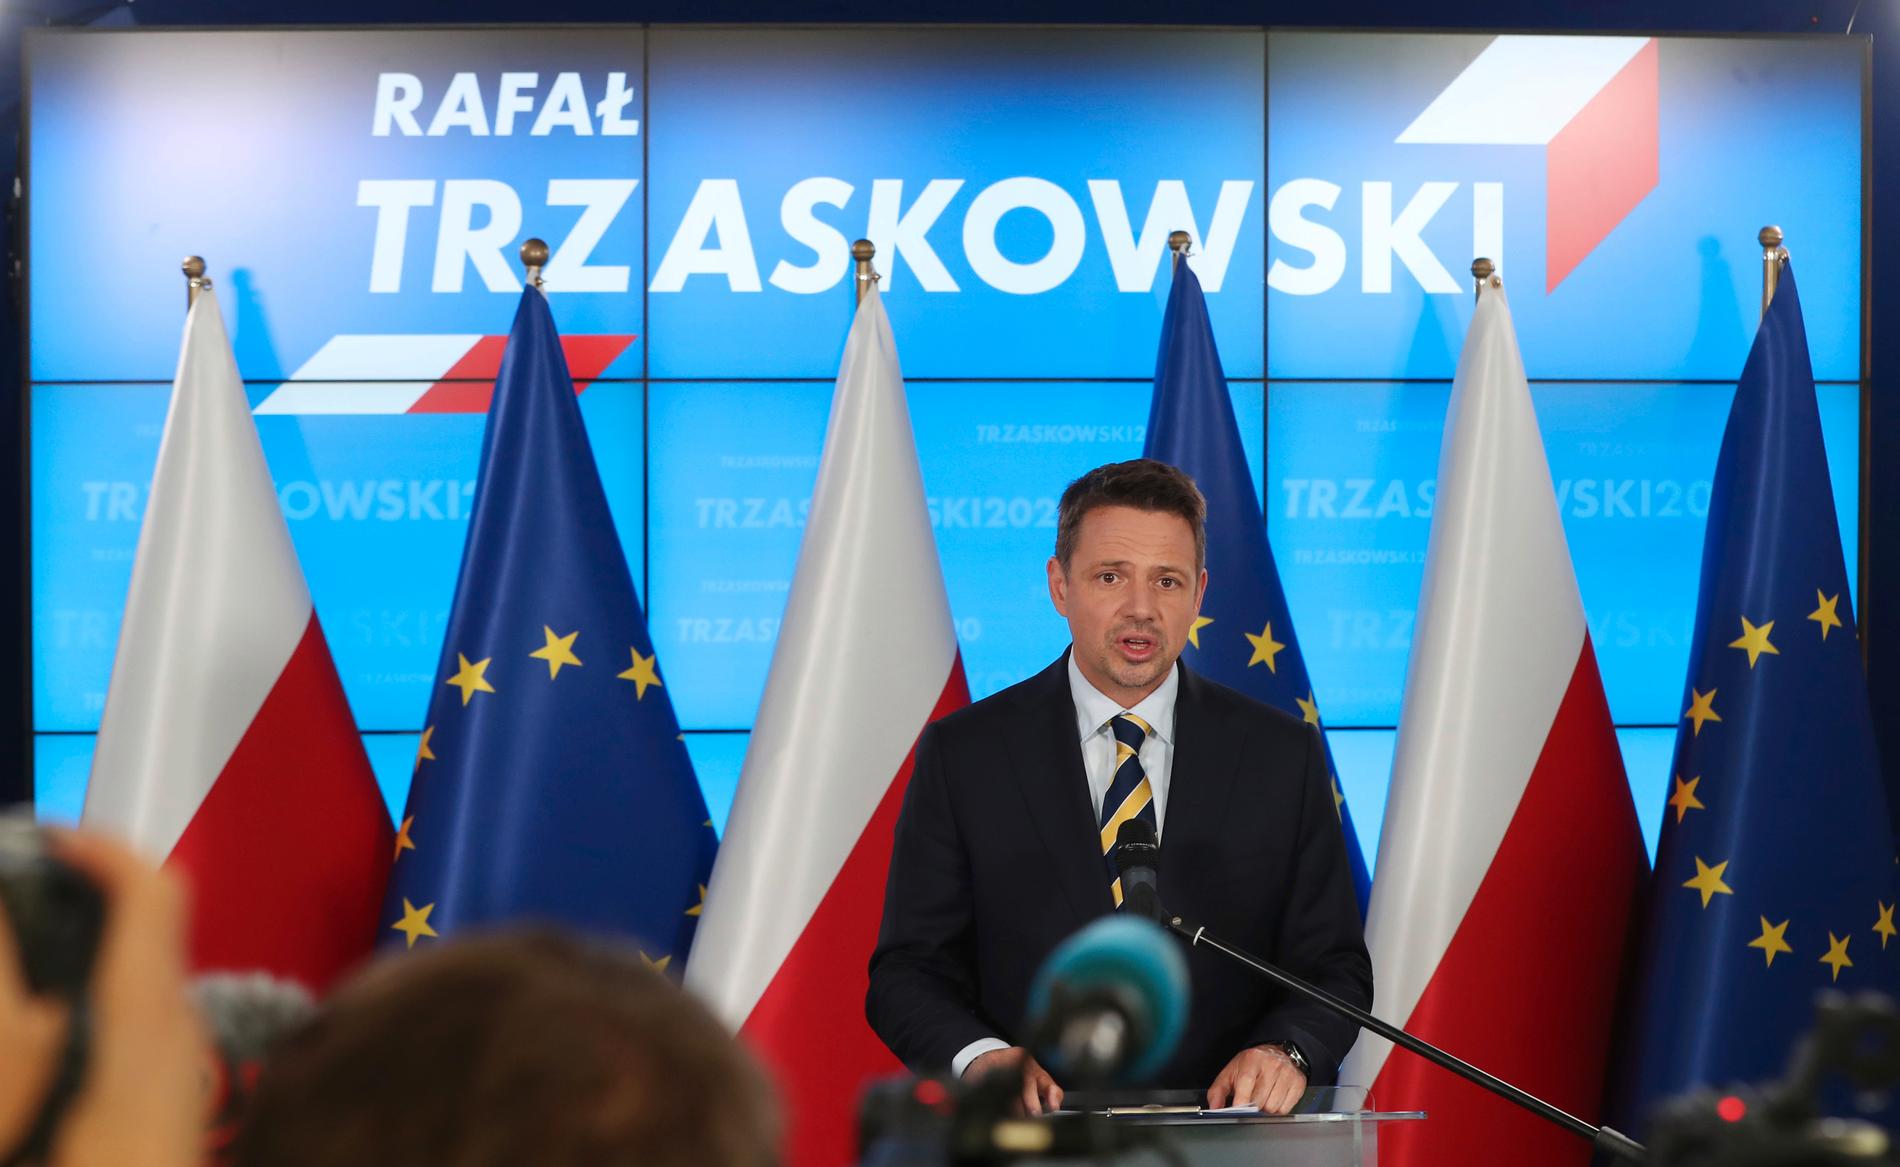 Rafal Trzaskowski erkänner sig besegrad den 13 juli, dagen efter det polska presidentvalet. Nu har hans parti Medborgarplattformen överklagat valresultatet.